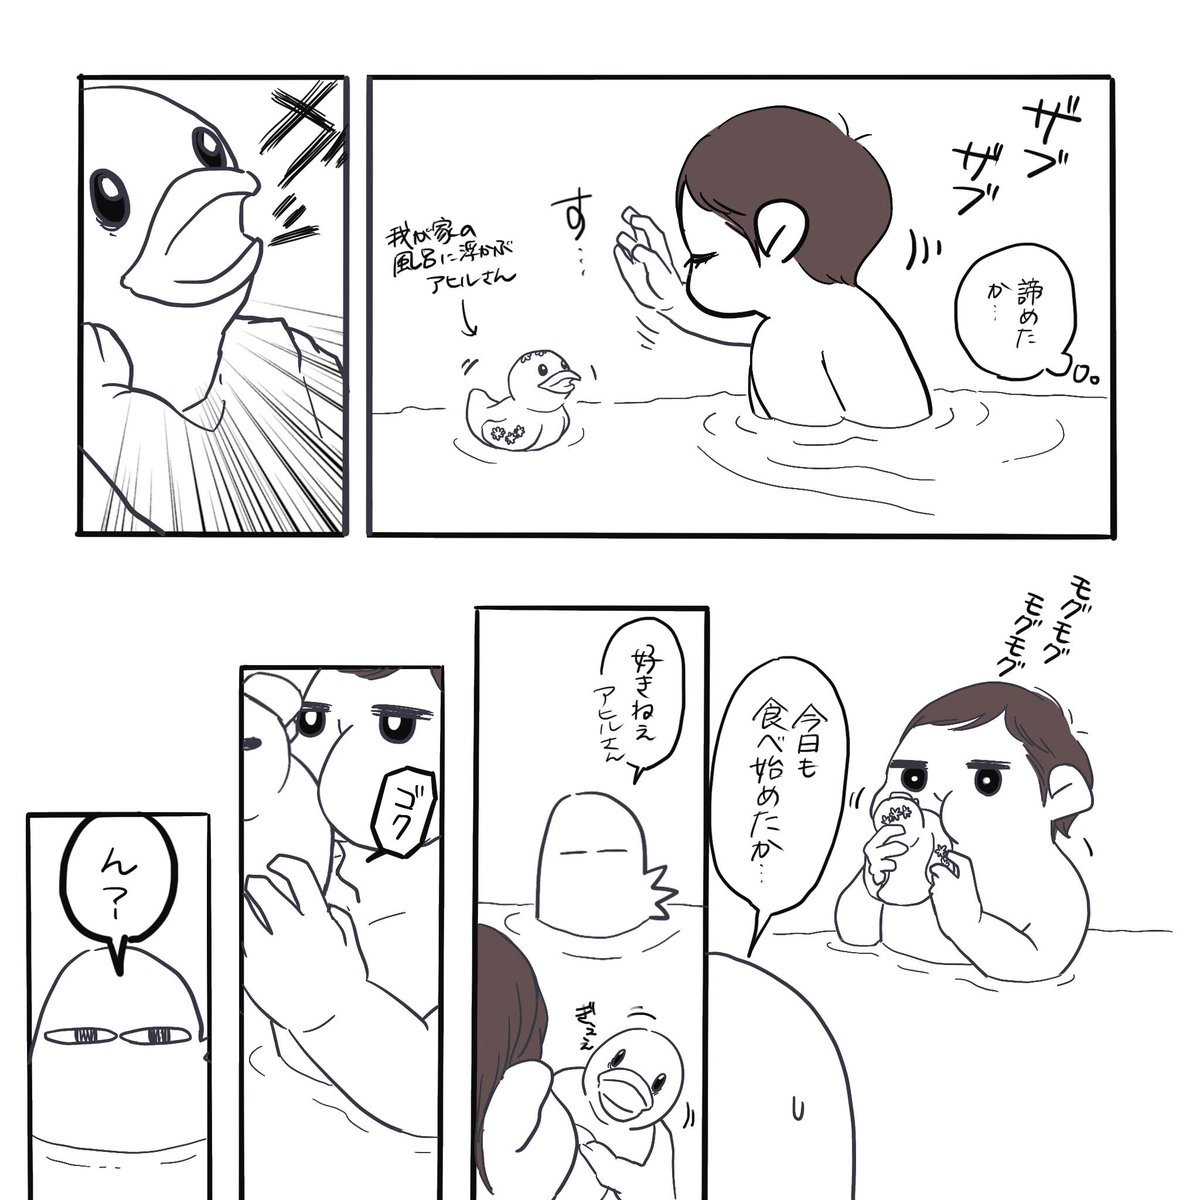 そんなに風呂は美味いか(1/2)
#育児絵日記 #エッセイ漫画 